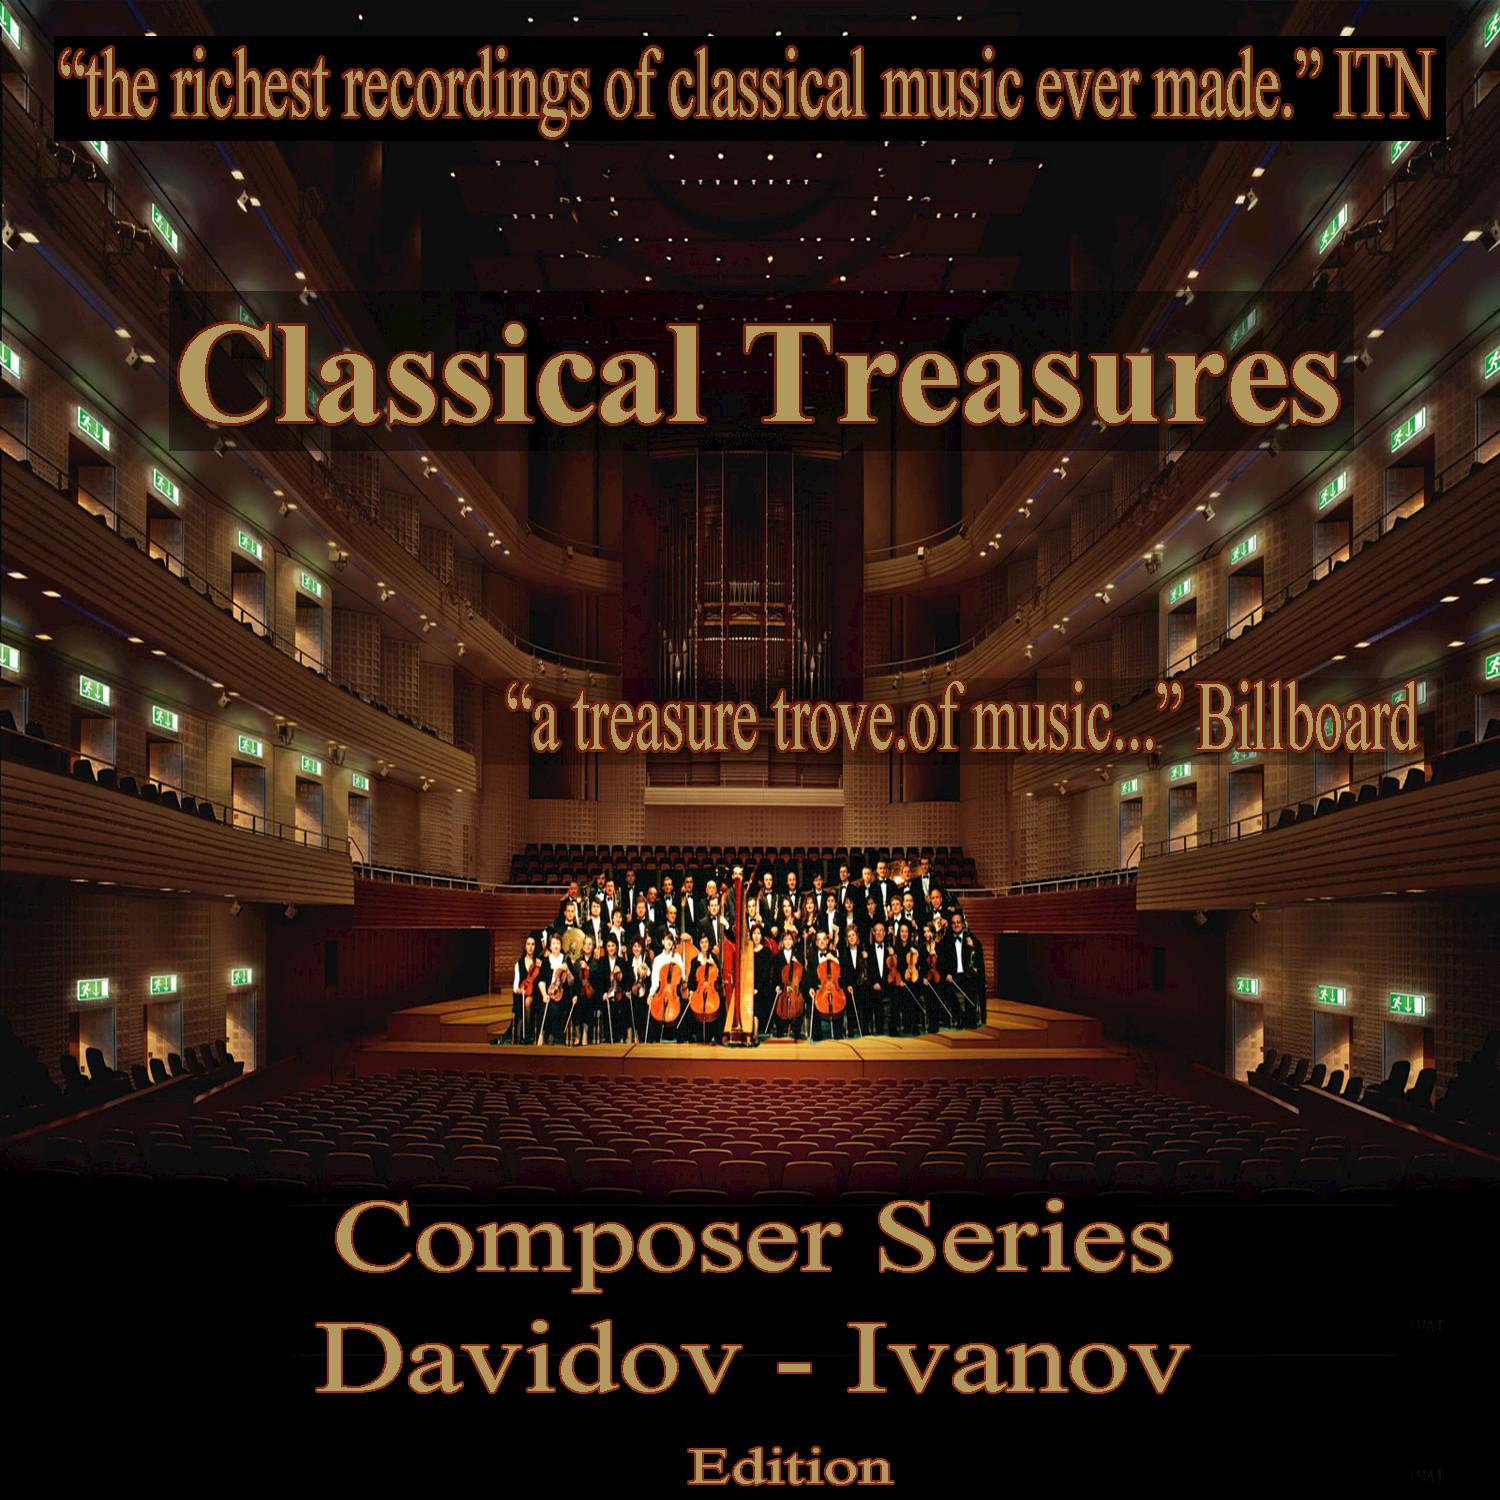 Classical Treasures Composer Series: Davidov - Ivanov